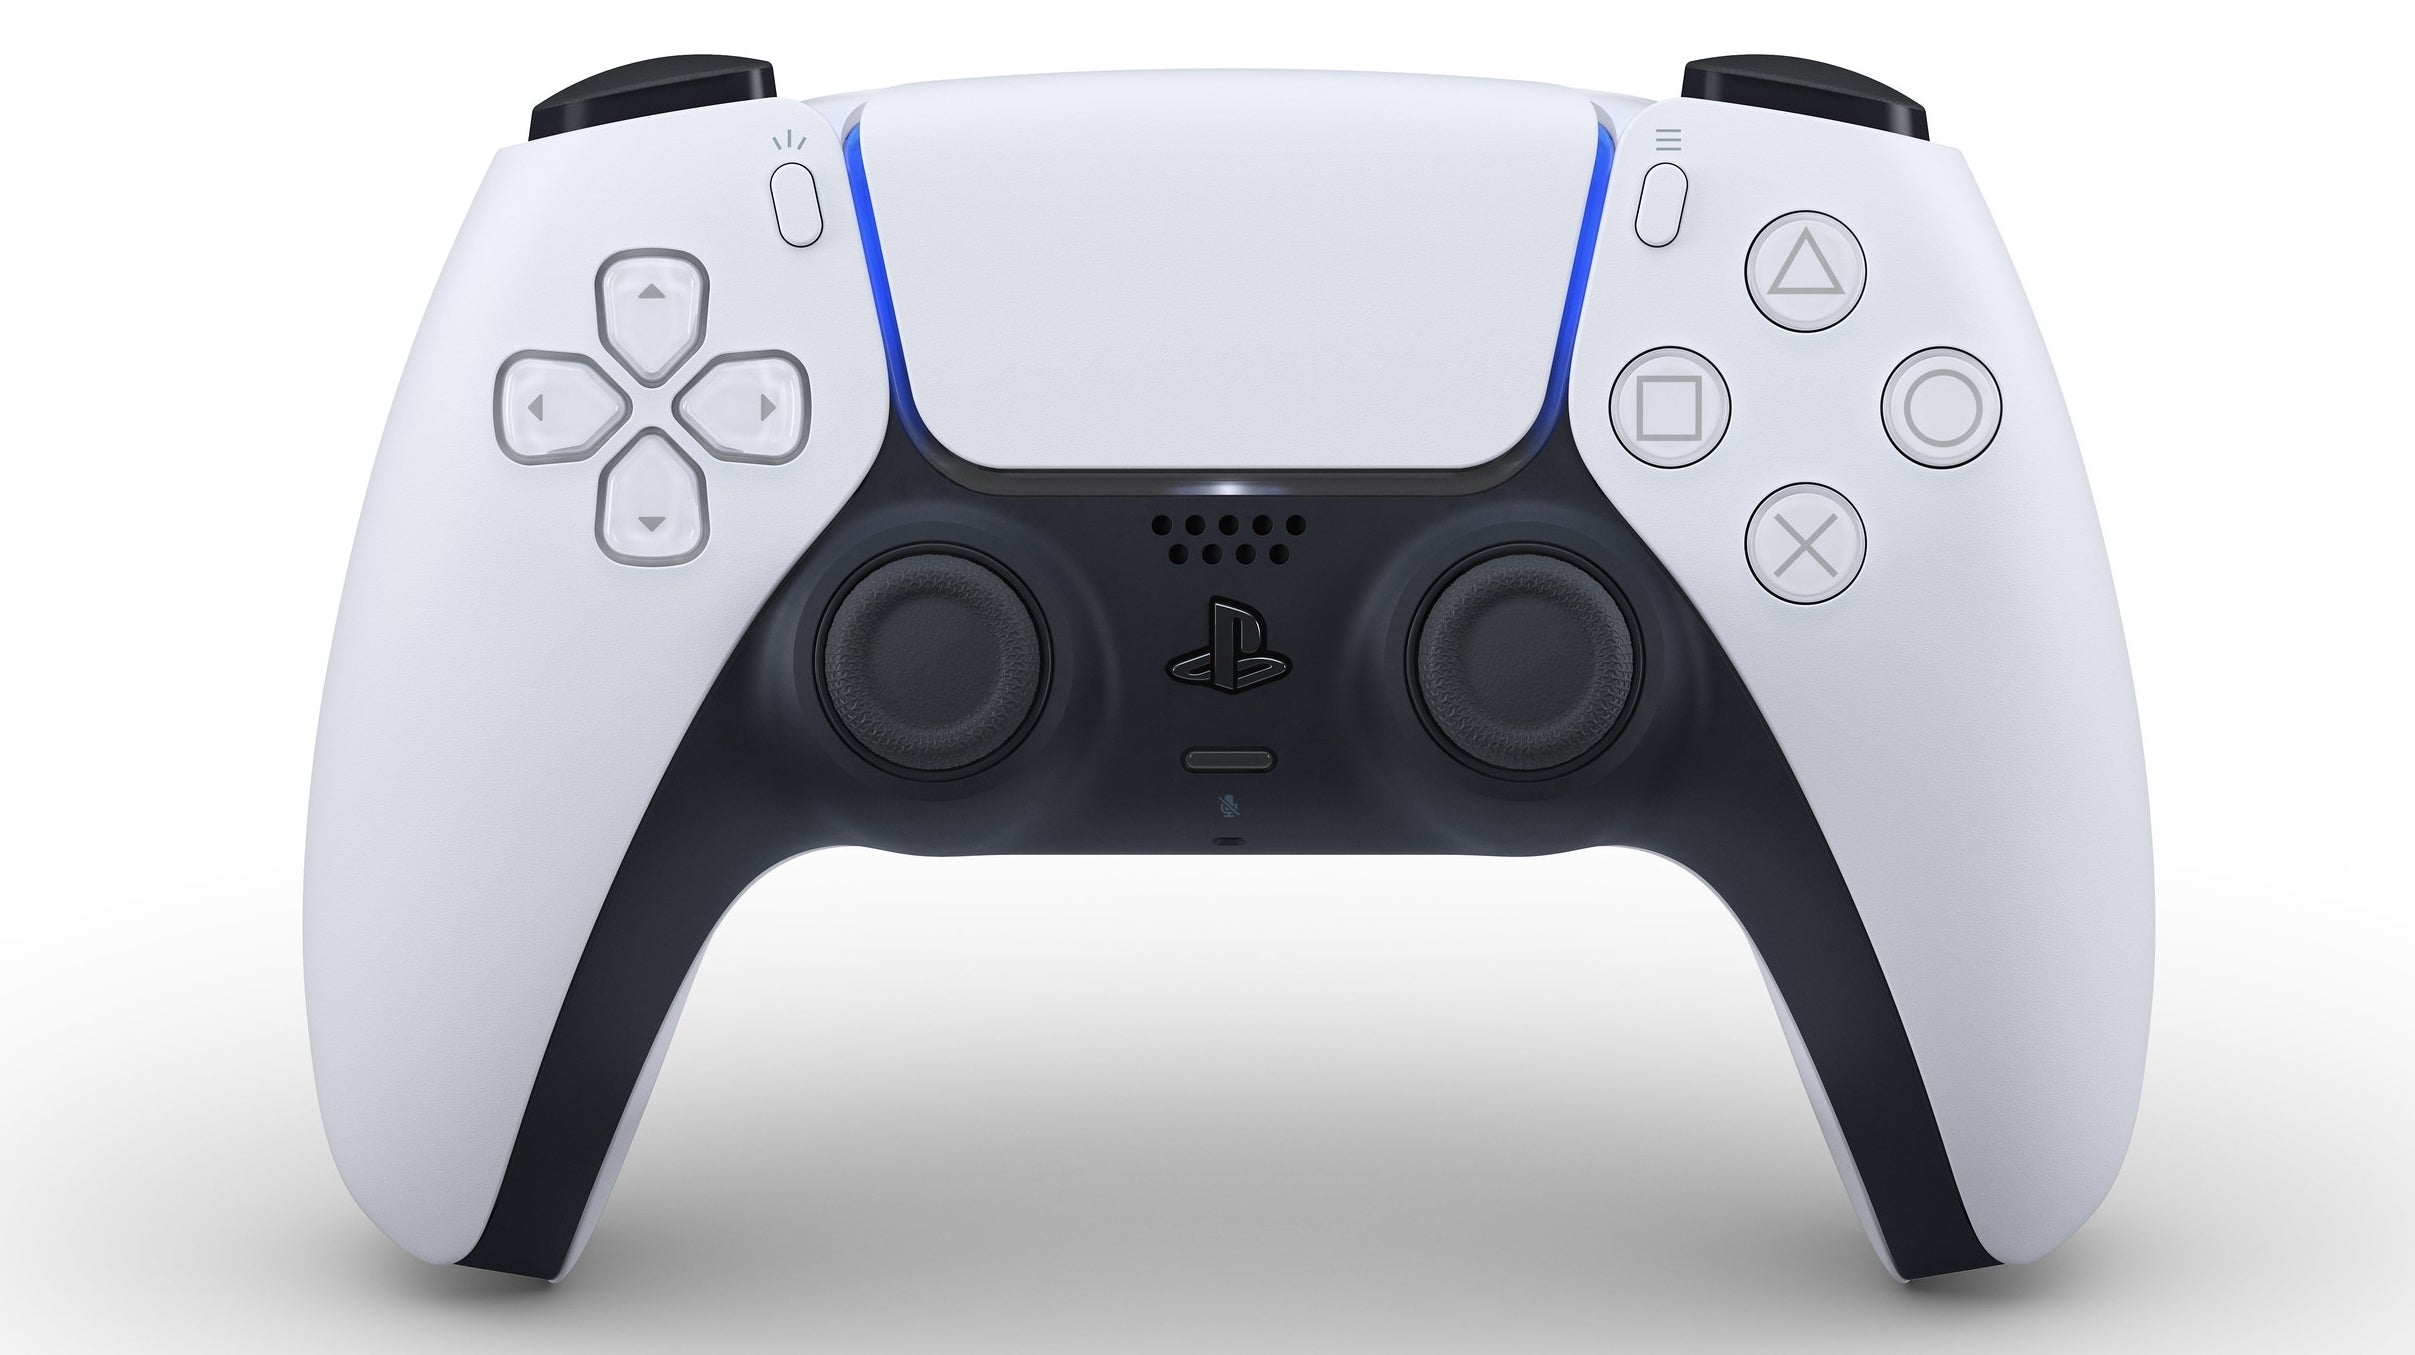 PS5 DualSense controller design, features, haptic feedback